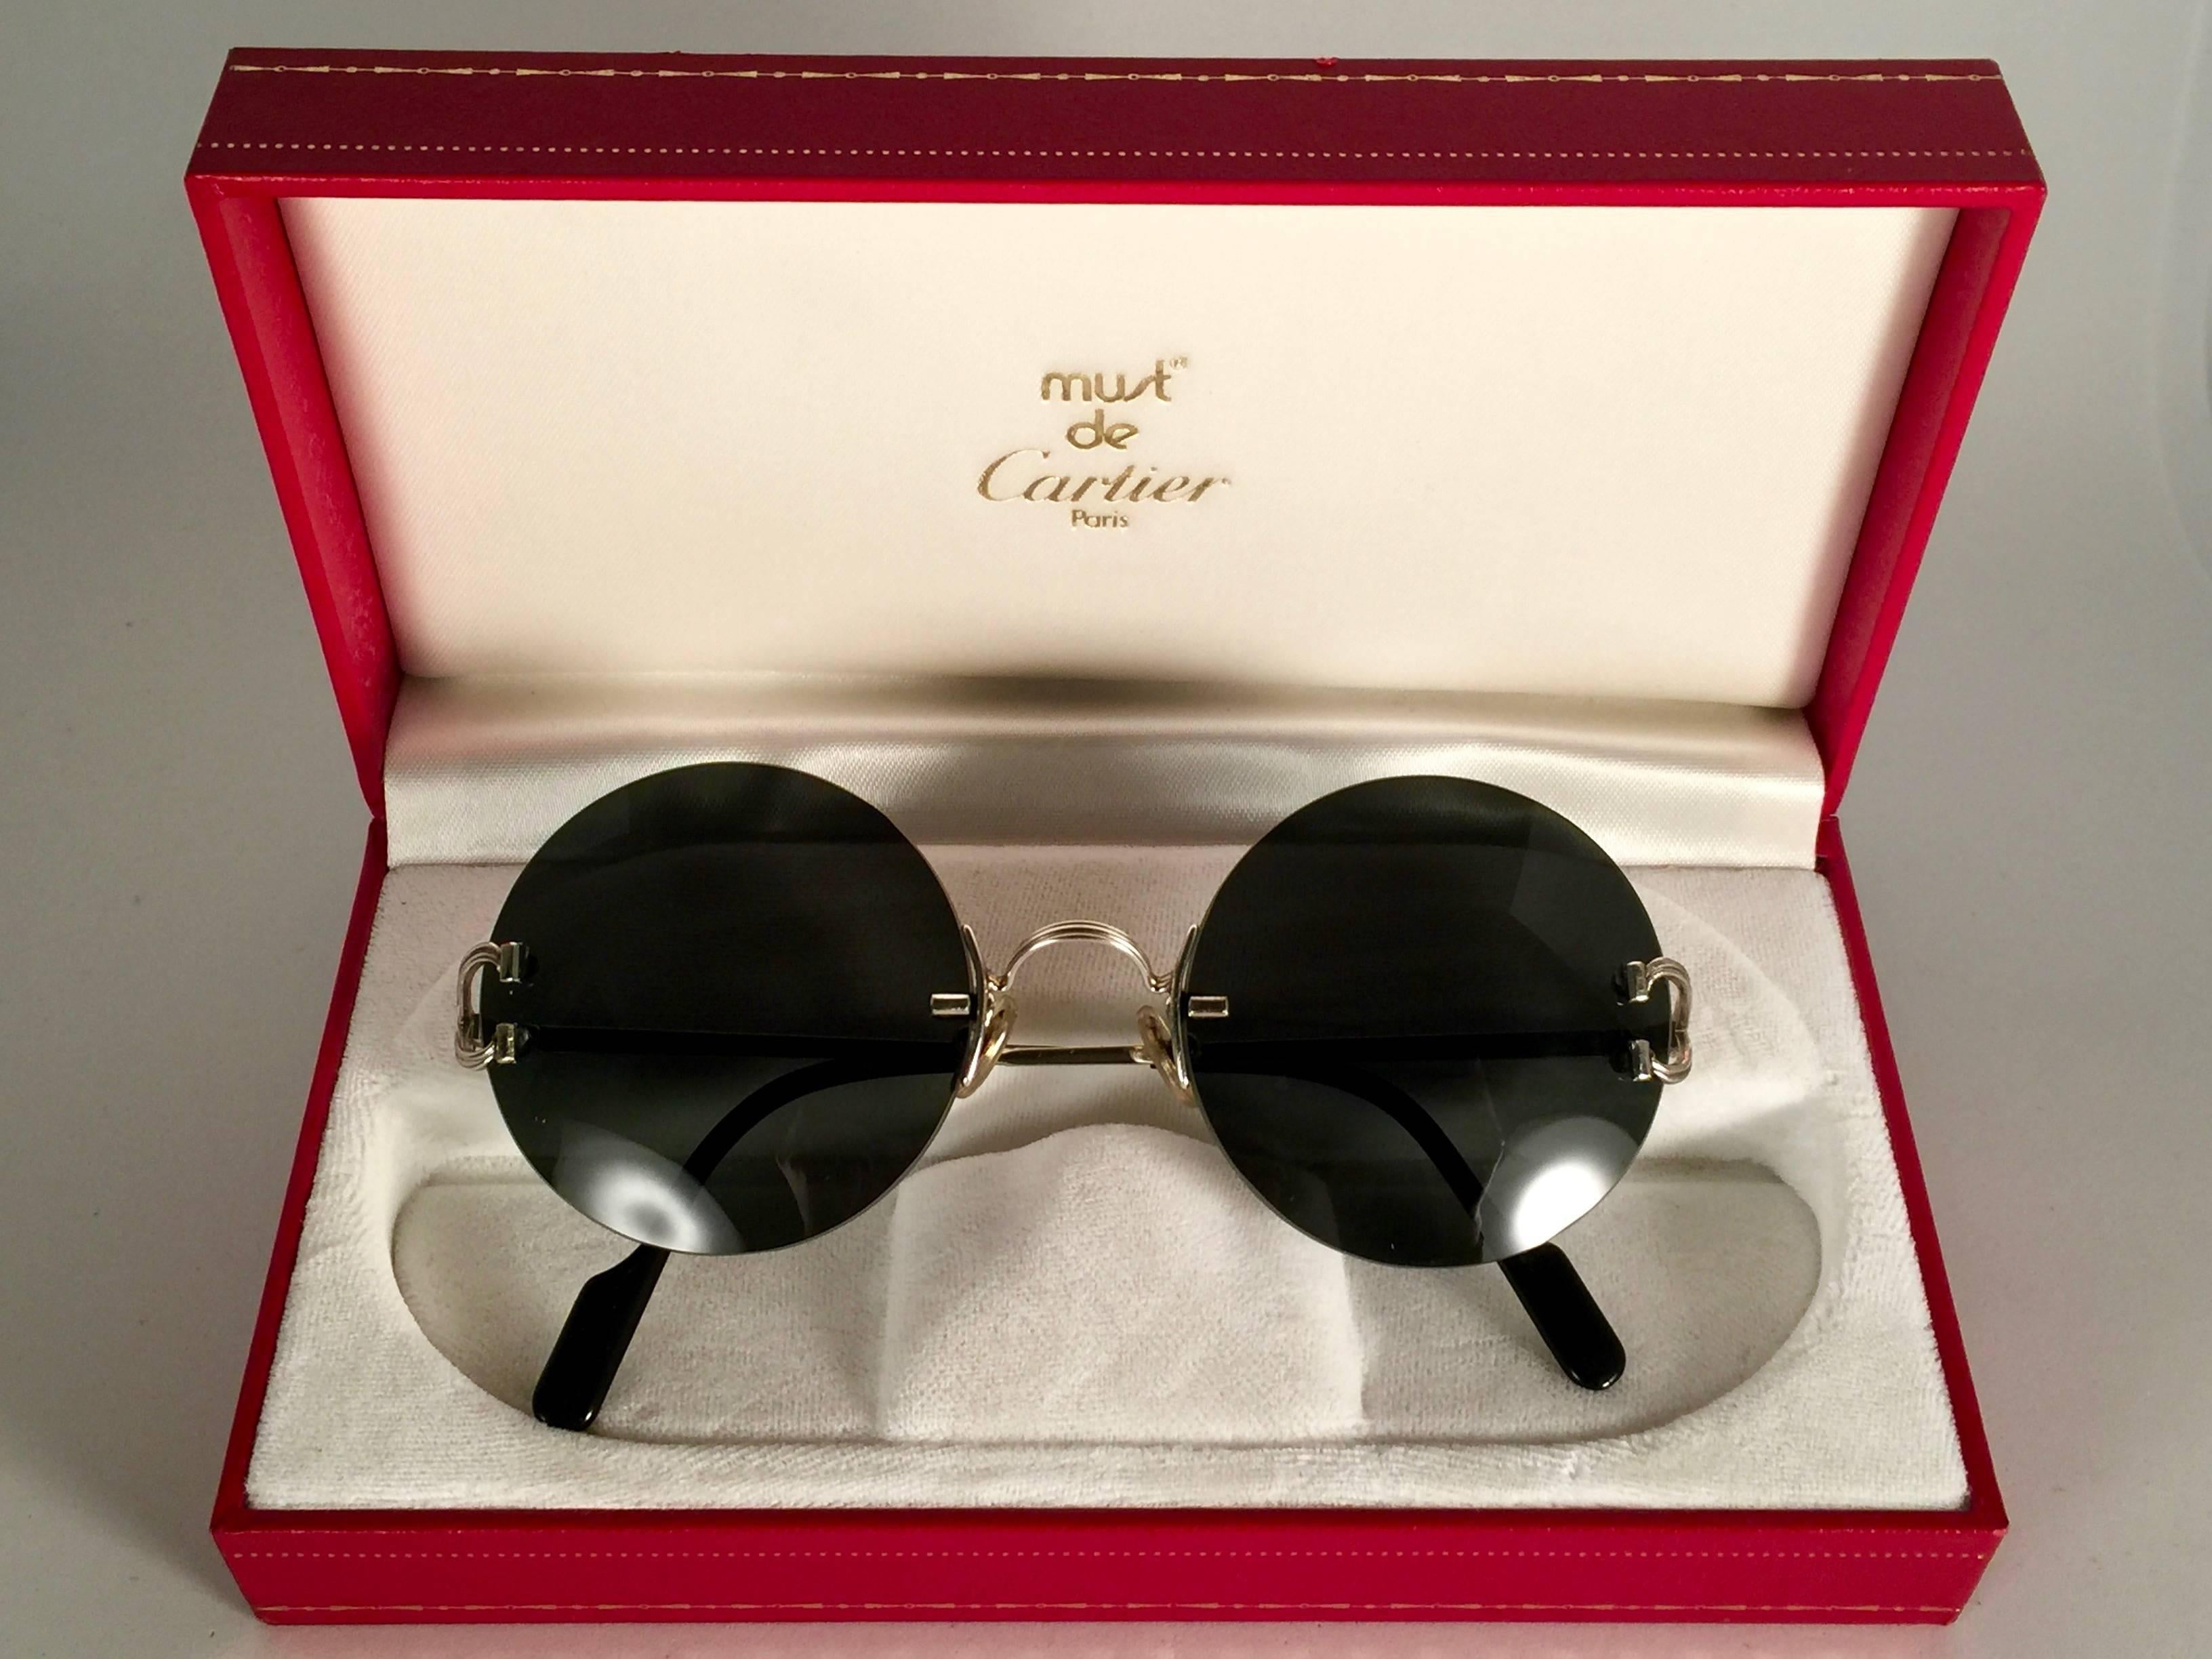 Neu 1990 Cartier Madison einzigartige Sonderausgabe randlose Sonnenbrille mit grauen (uv-Schutz) Gläsern. 
Rahmen mit Front und Seiten aus Platine. 
Cartier Platine-Zeichen auf den schwarzen Onyx-Ohrpassstücken. 
Sie sind wie ein Paar Juwelen auf